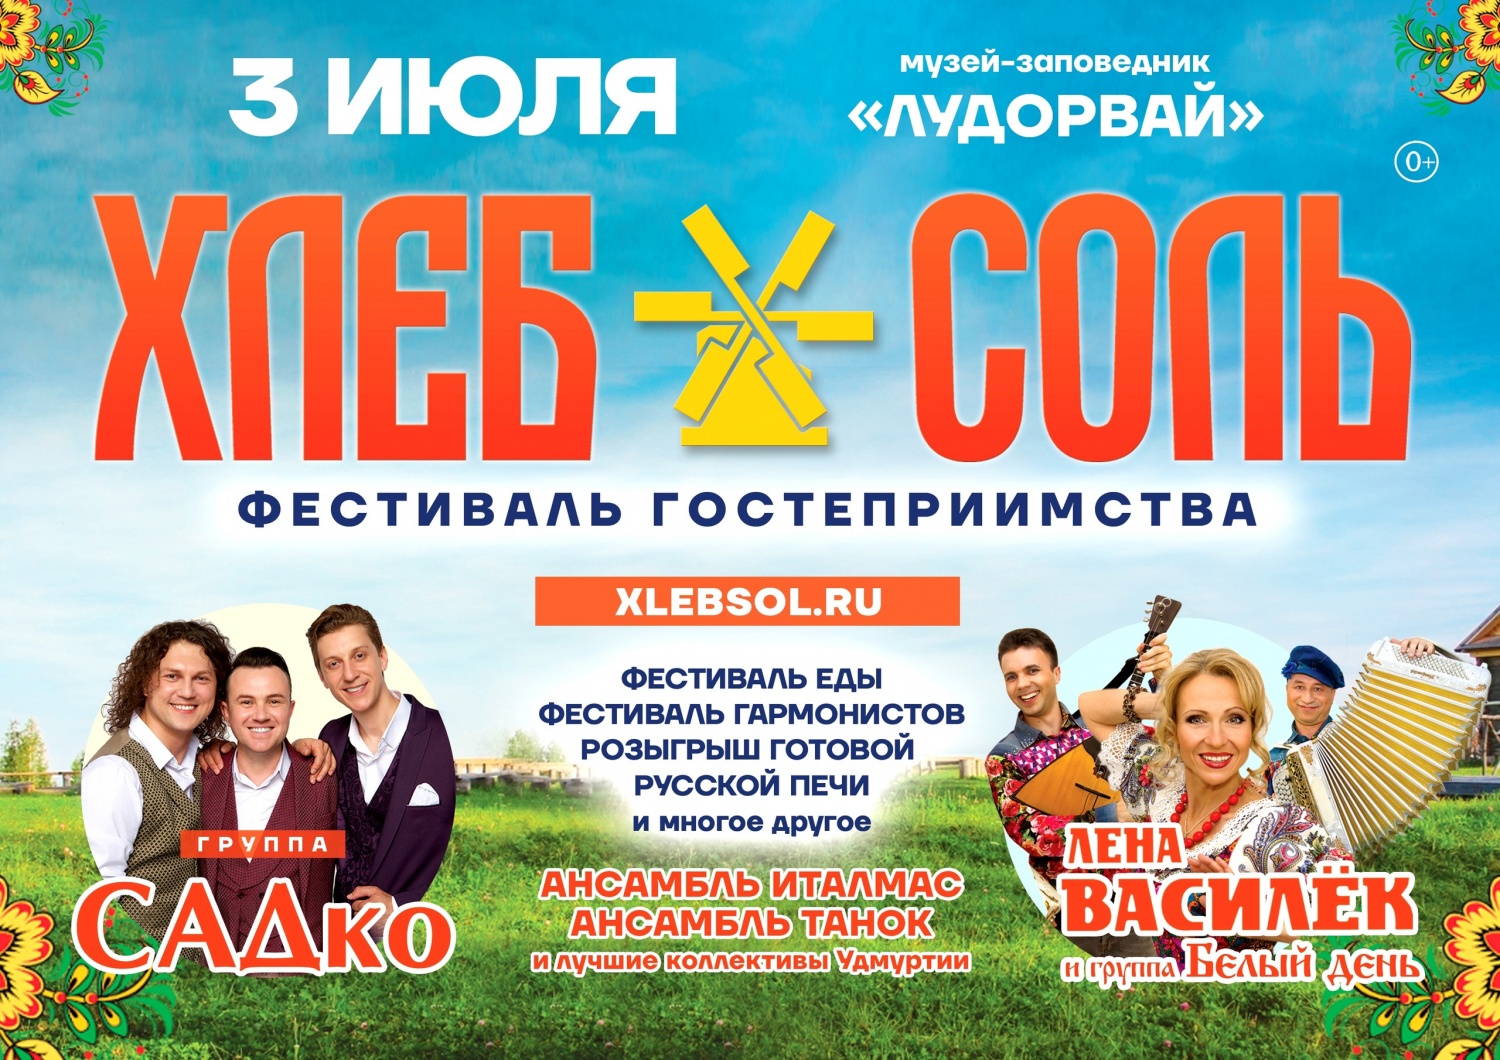 Фестиваль гостеприимства "ХЛЕБСОЛЬ" состоится 3 июля